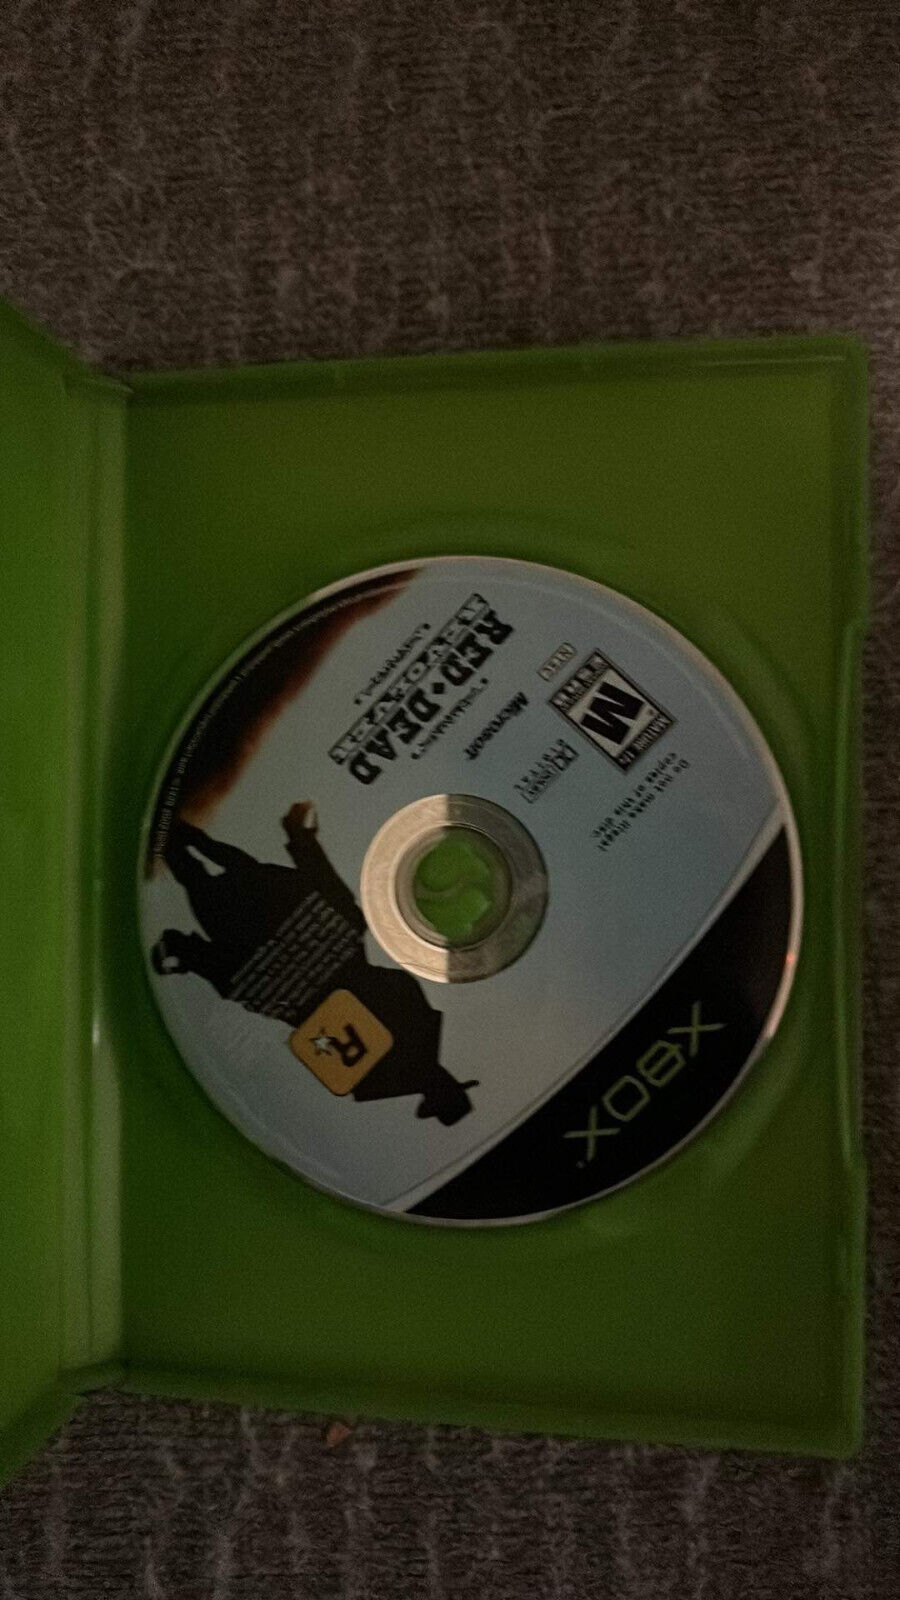 Red Dead Revolver Microsoft Original Xbox - Tested